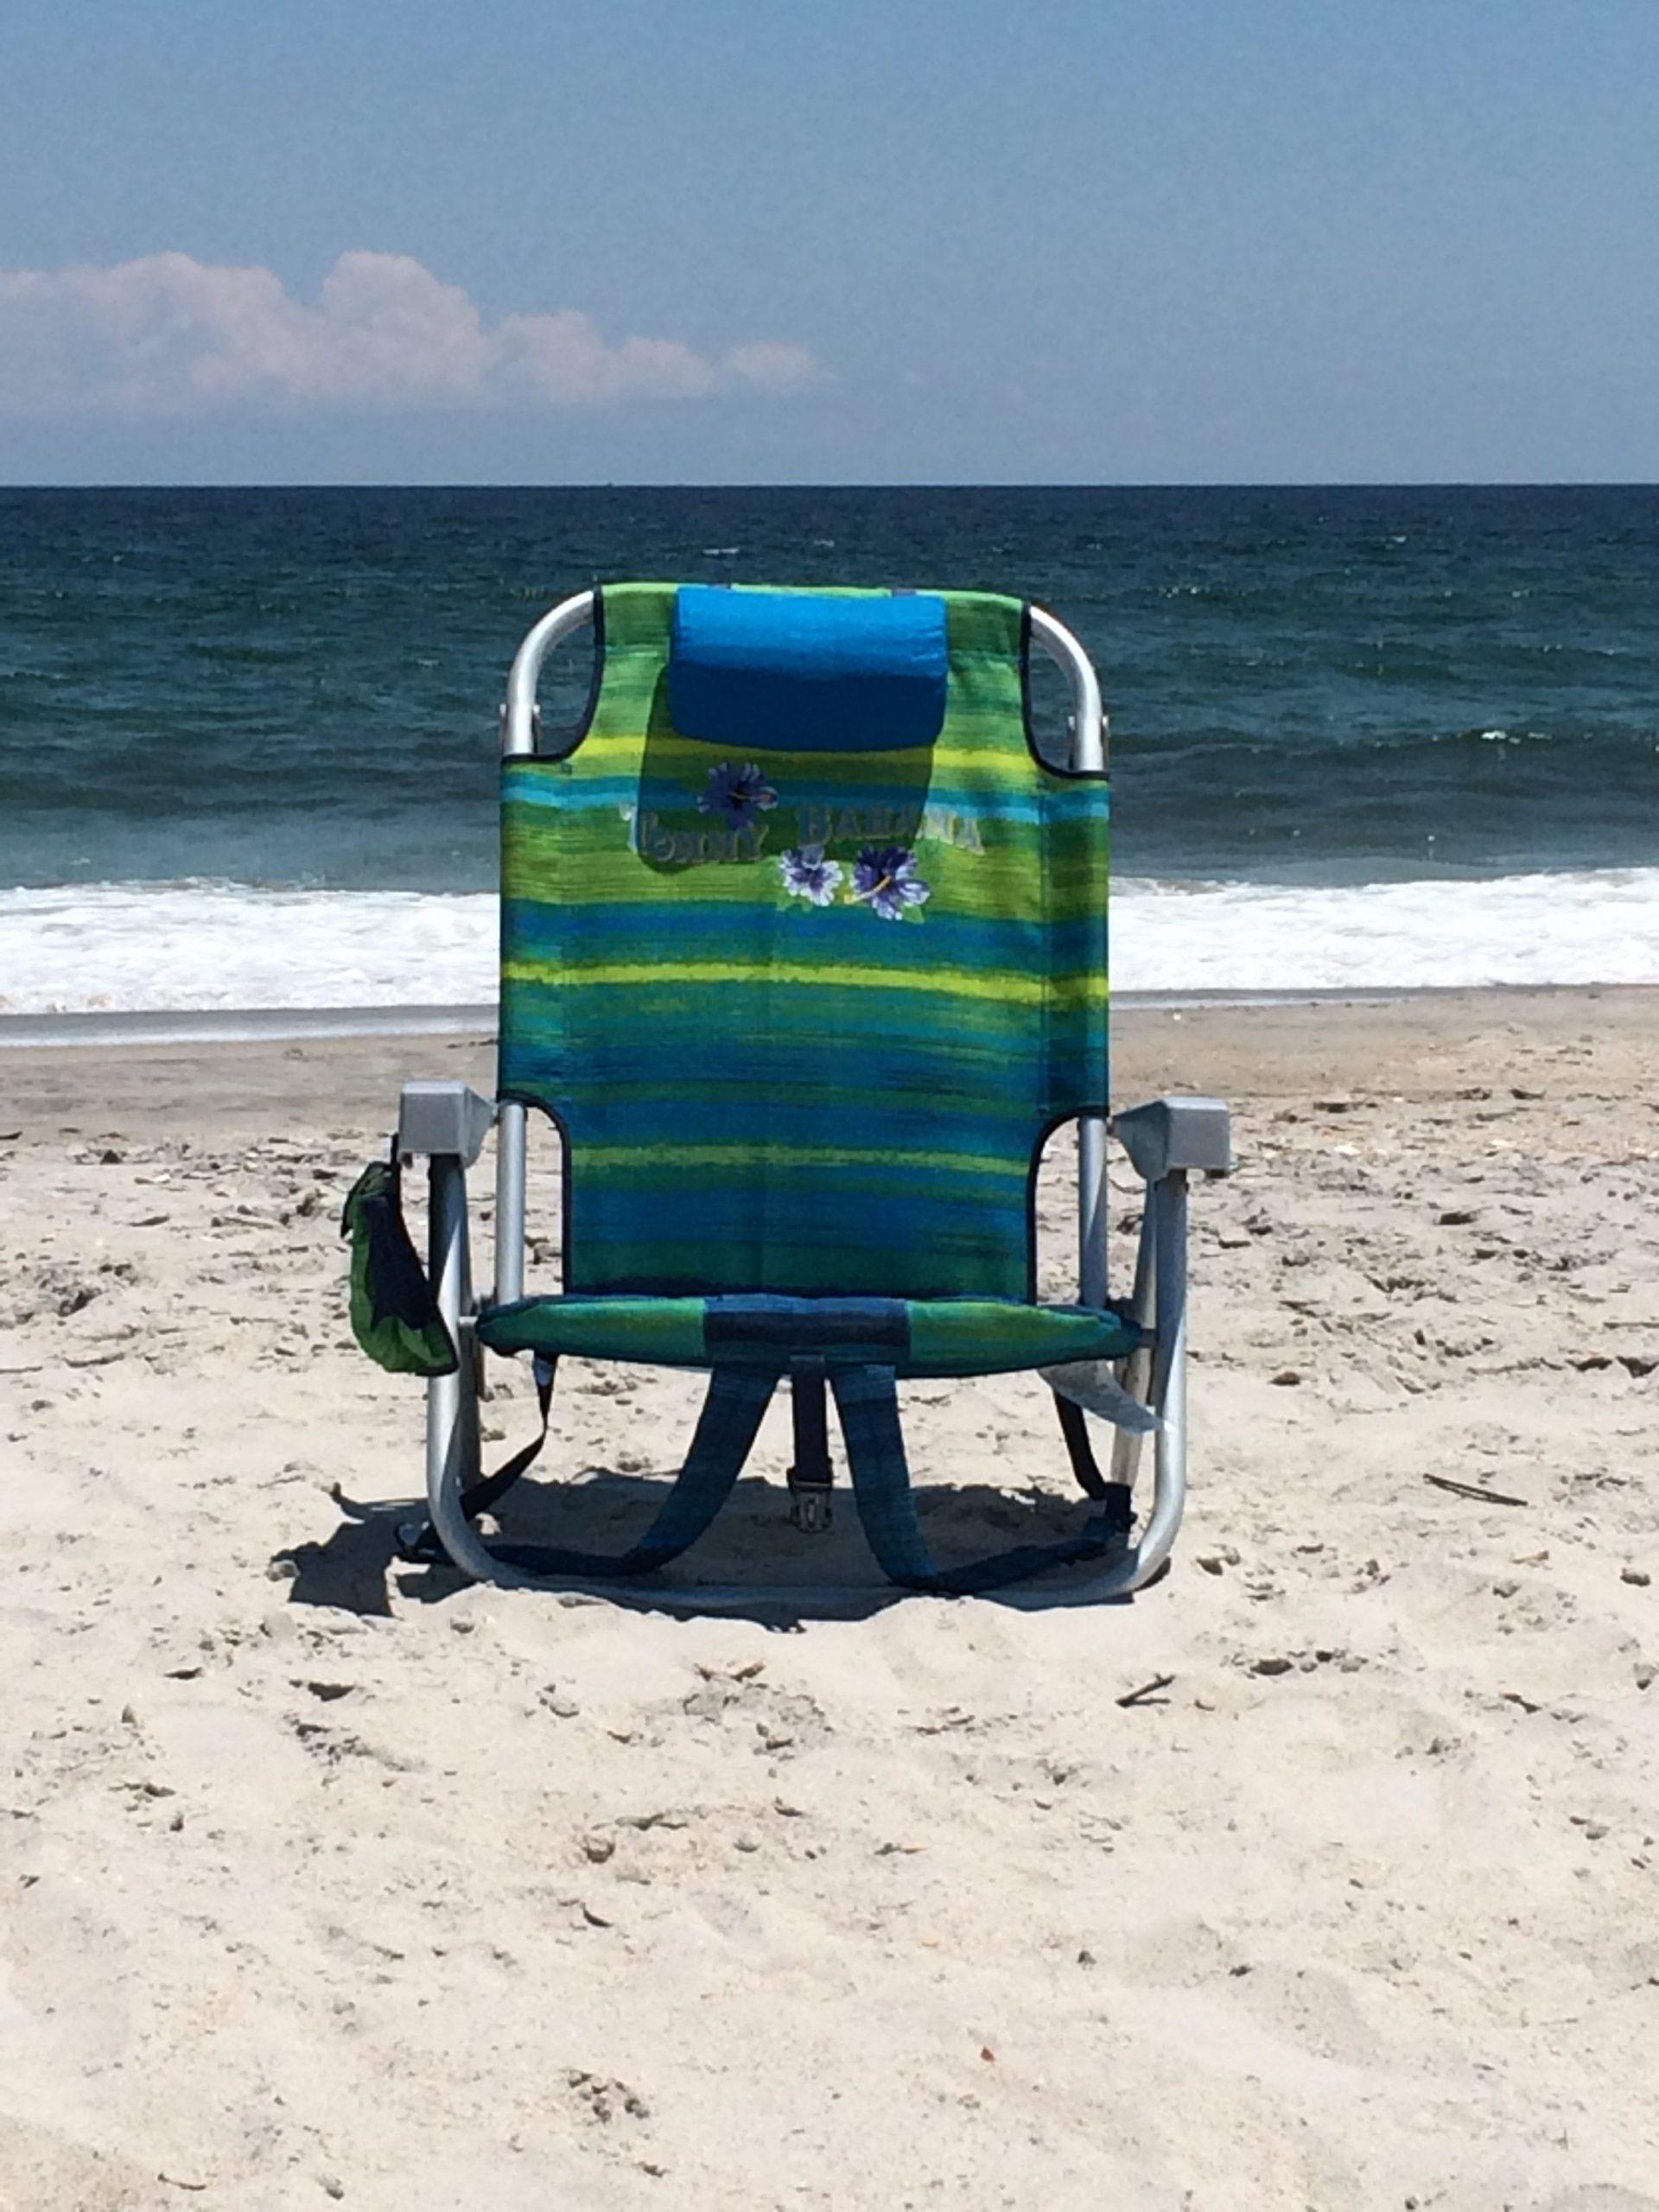 Backpack Beach Set (F8) - Wrightsville Beach Chair, Umbrella, & Cabana  Rentals